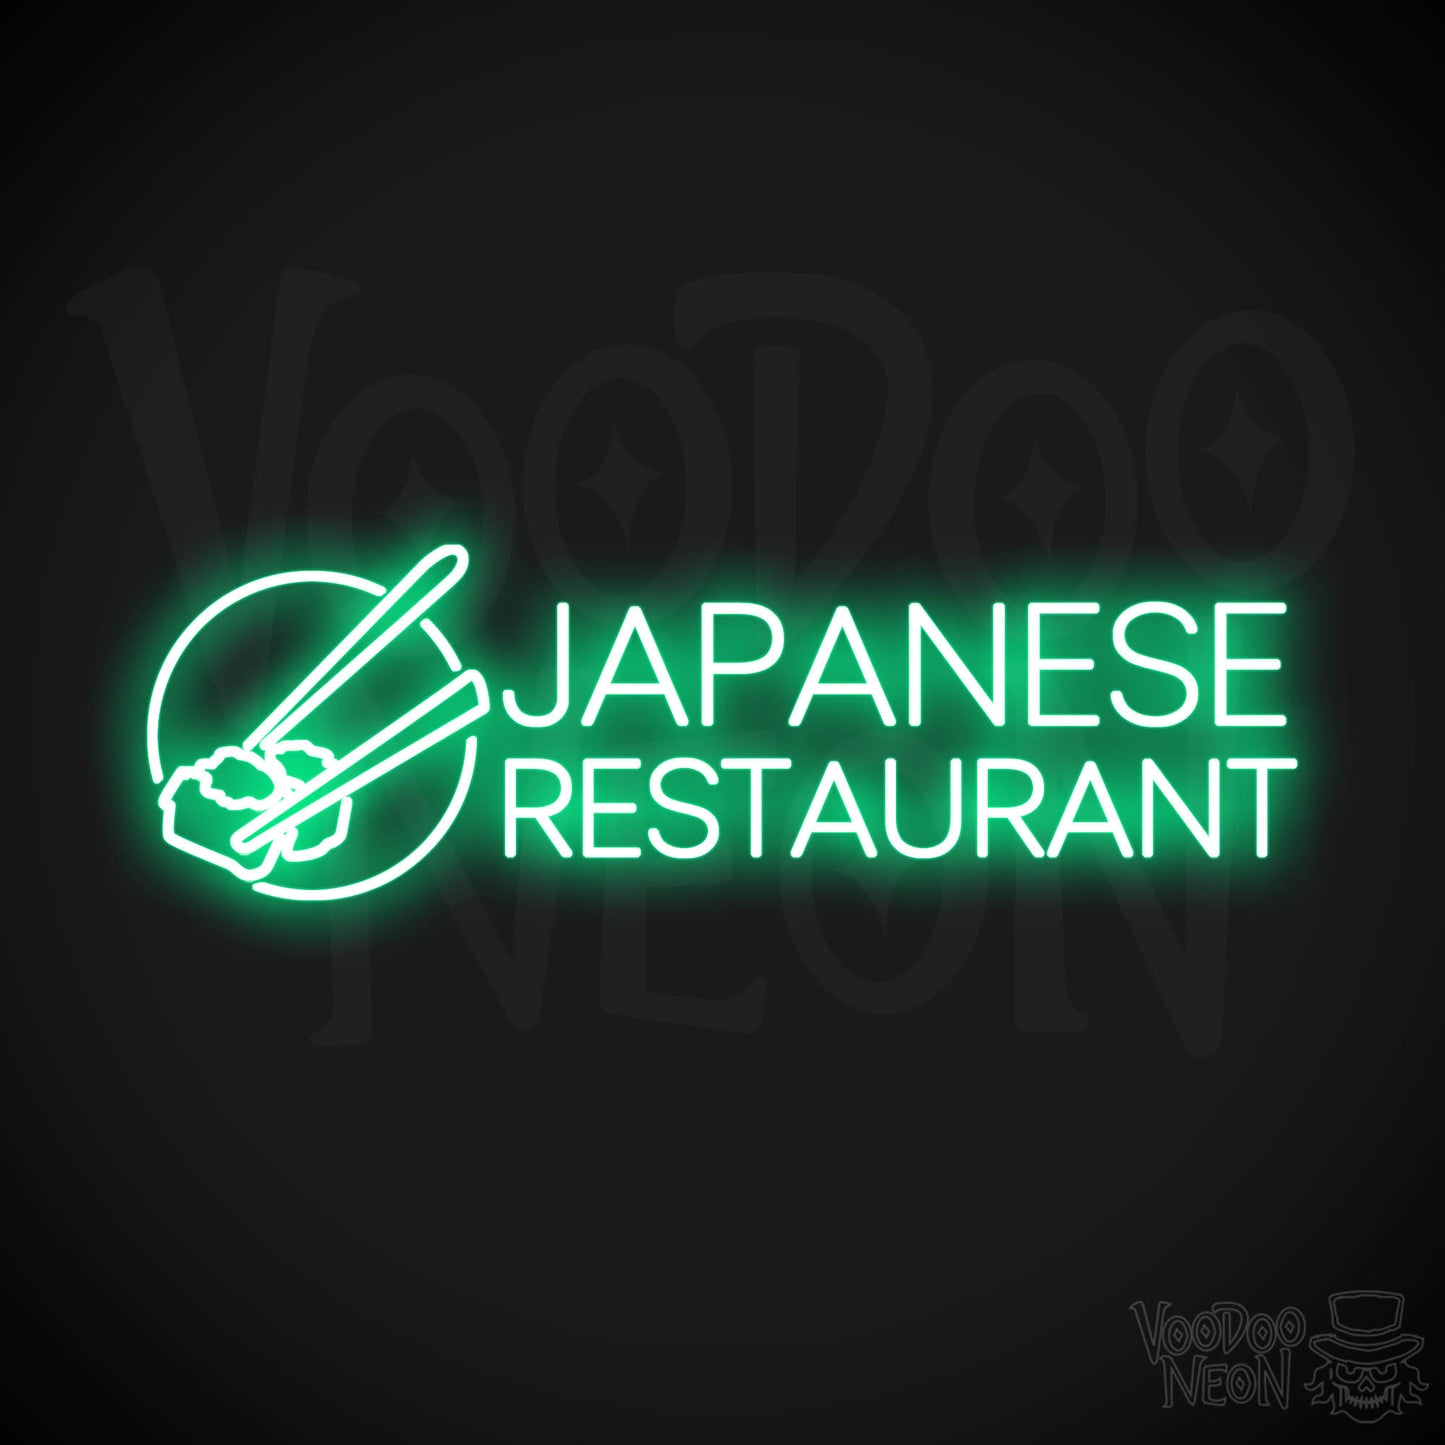 Japanese Restaurant LED Neon - Green